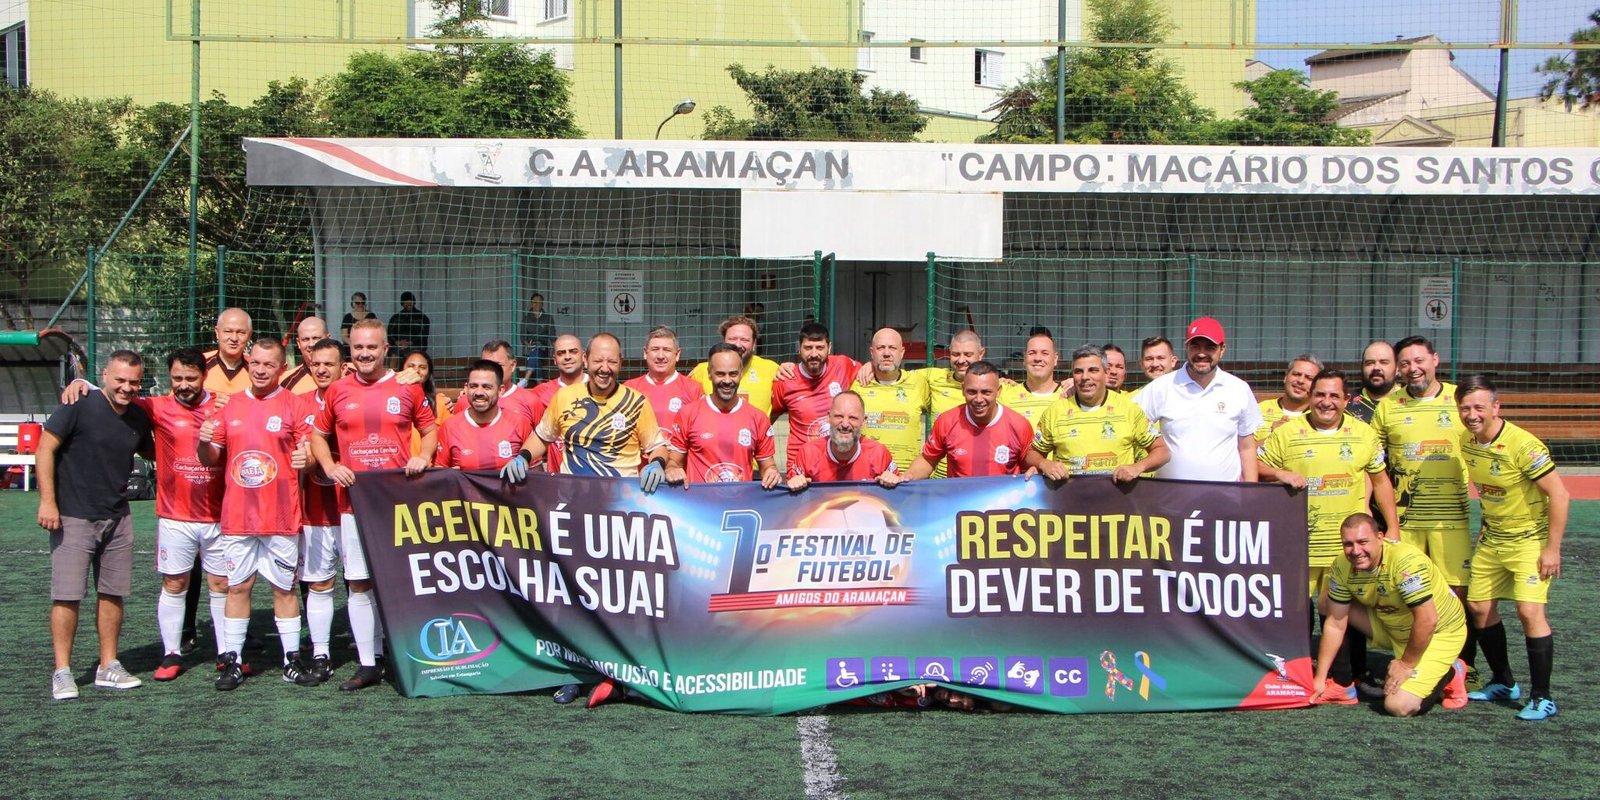 Racing Resenha Futebol Clube Aramaçan